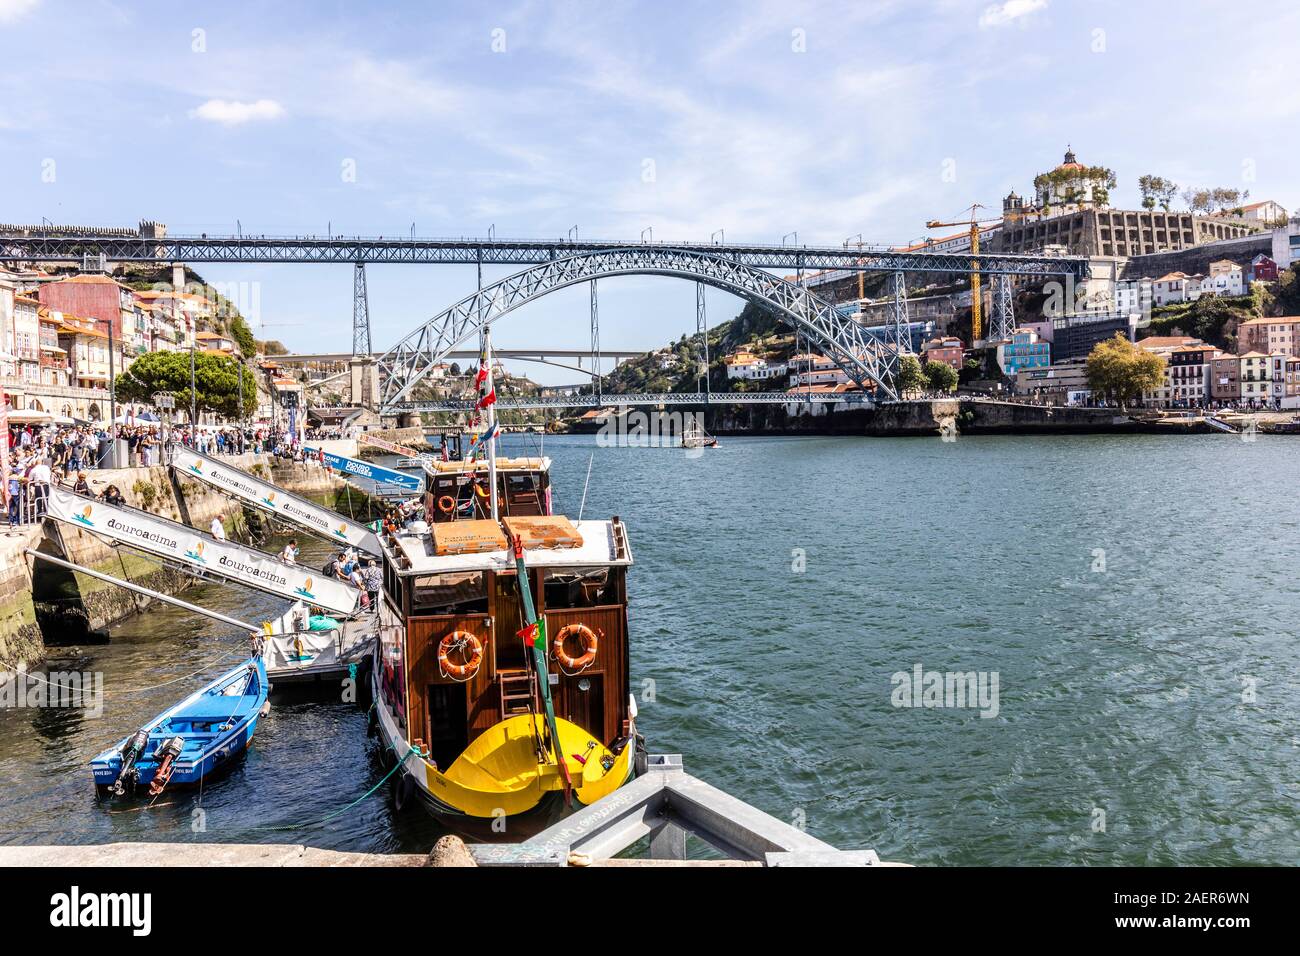 Porto, la ribera norte del río Duero, mirando hacia el este hacia el puente de Luis I. Cola de turistas para tomar paseos en barco a lo largo del río Duero Foto de stock